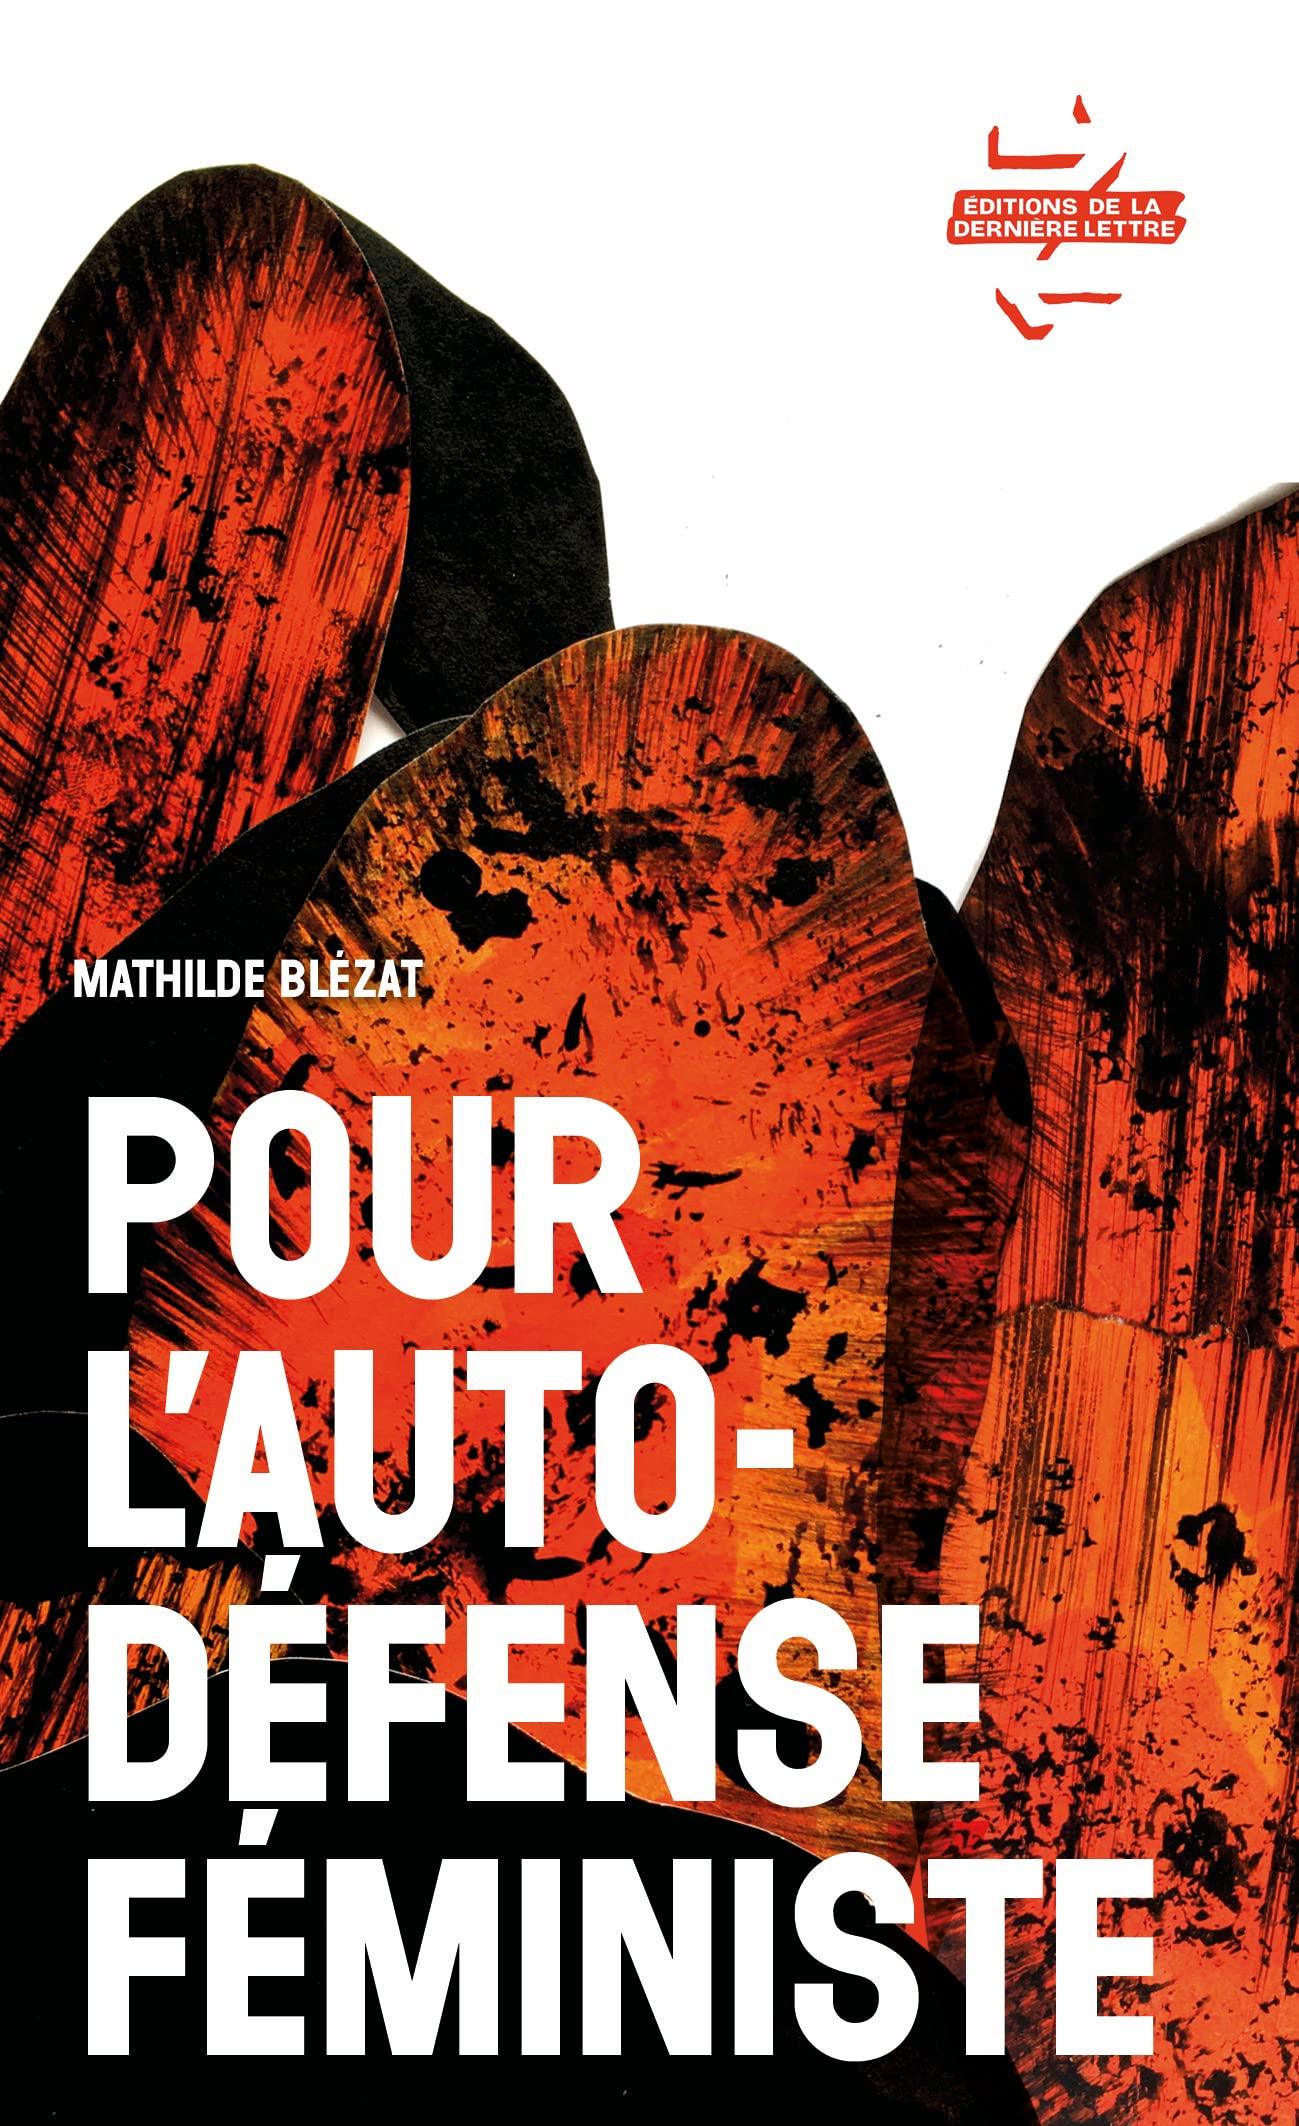 Couverture de "Pour l'auto-défense féministe" de Mathilde Blézat (Editions de la Dernière Lettre, 2022).